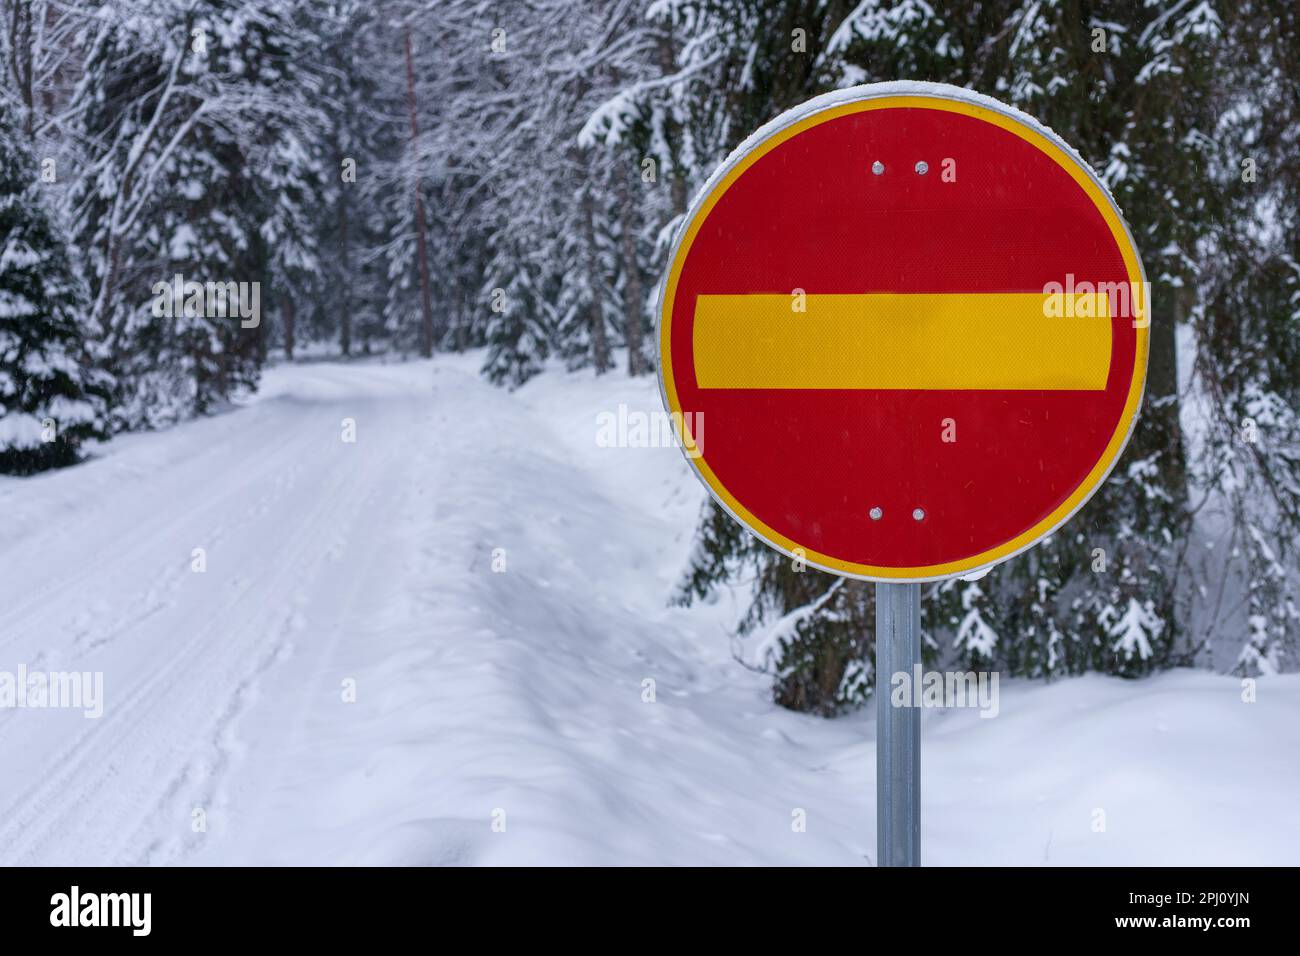 No hay señal de tráfico de entrada al lado de una carretera cubierta de nieve en invierno. Hameenlinna, Finlandia. Foto de stock